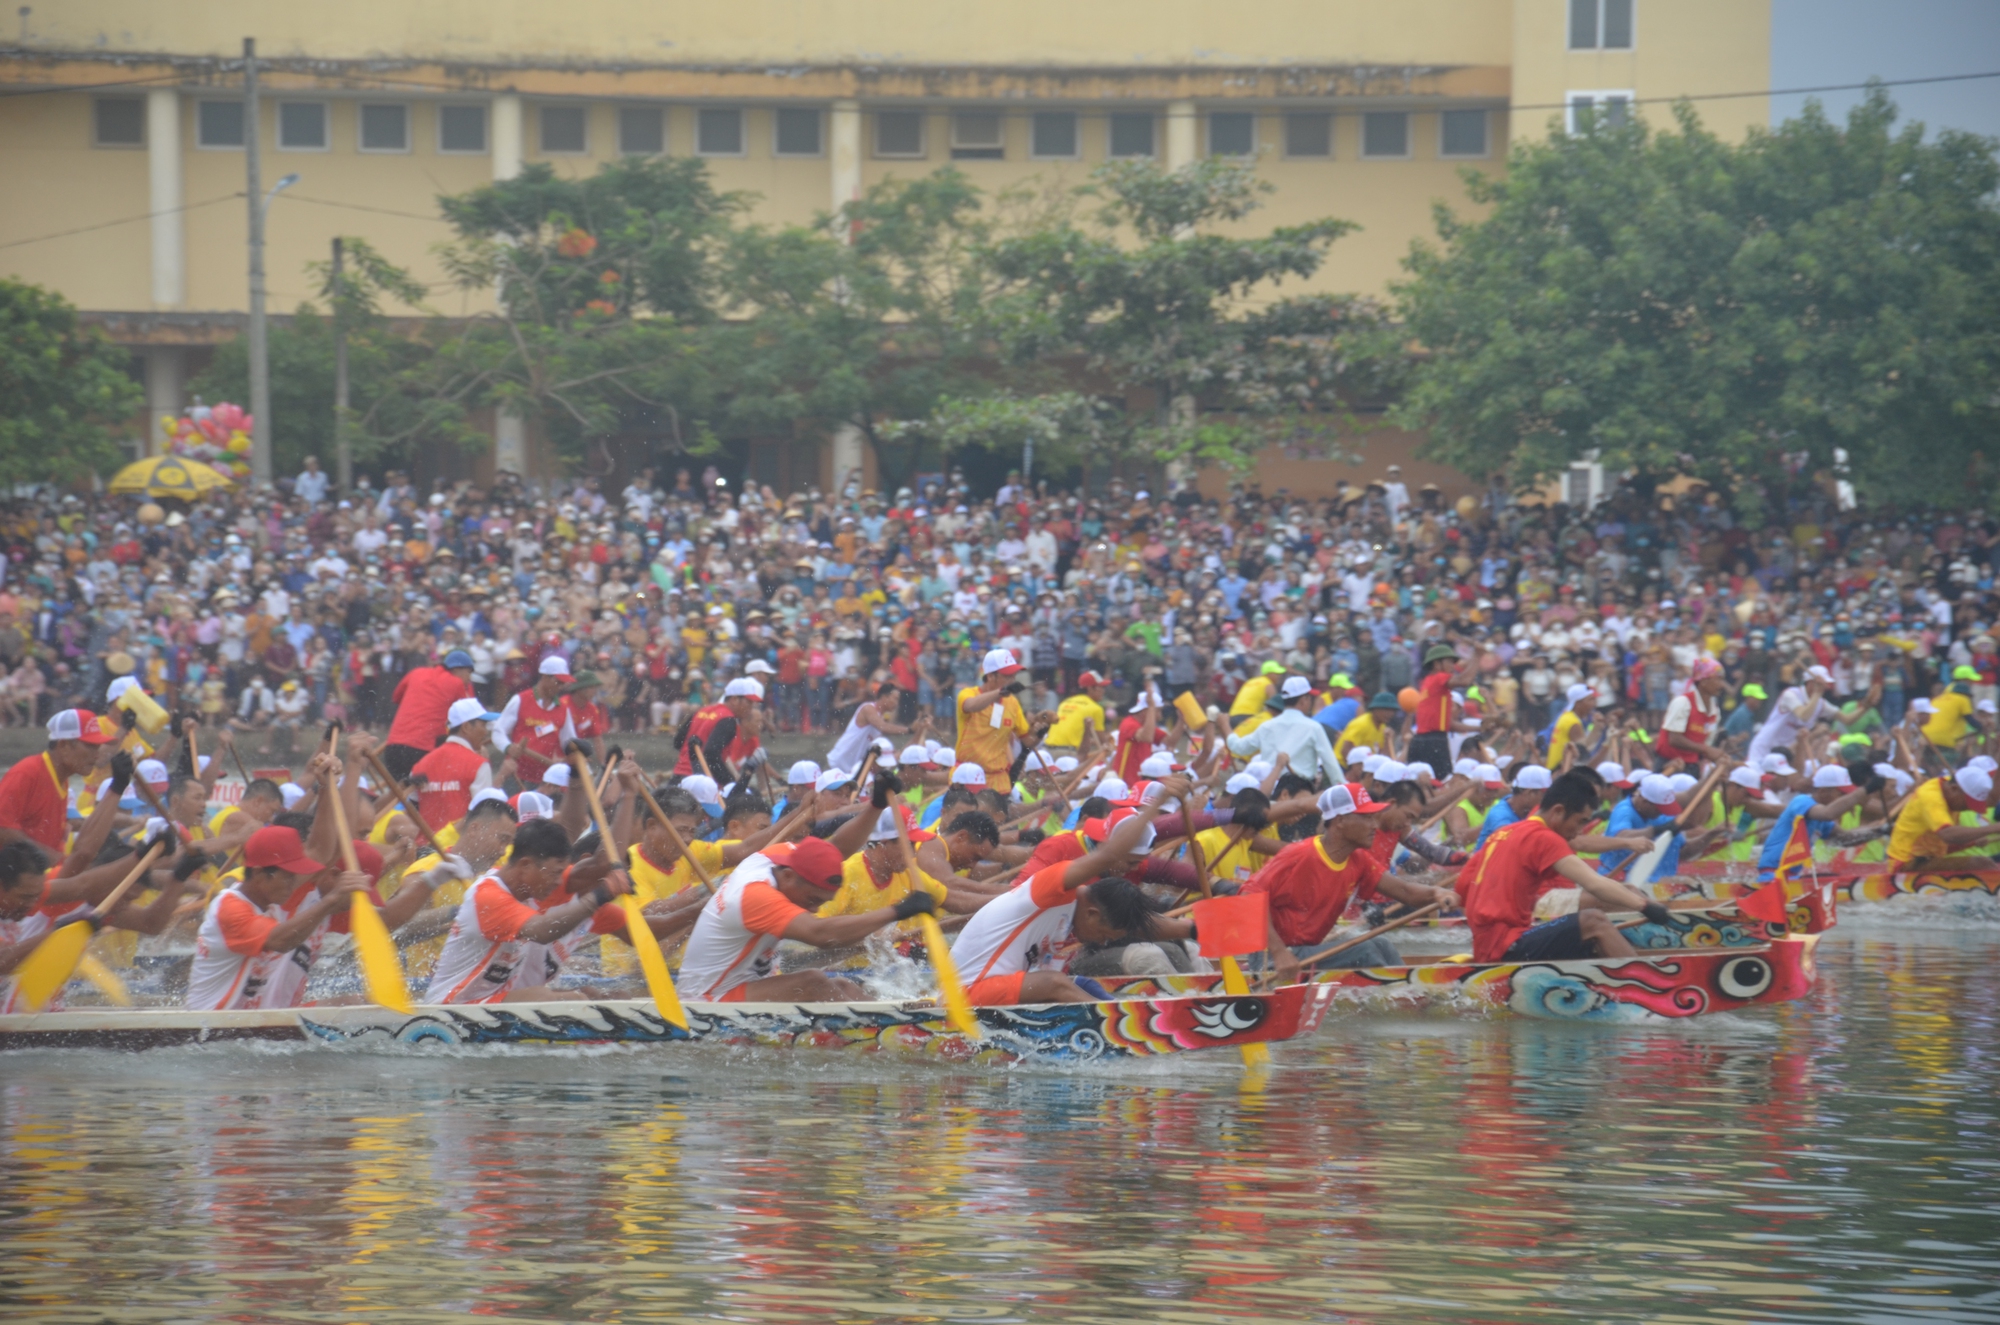 Rồng rực sắc đỏ, tiếng trống và tiếng râm râm của người chèo thuyền đua trên dòng sông Kiến Giang là một cảnh tượng cực kỳ sống động. Hãy đến với hình ảnh này để tận hưởng cảm giác hồi hộp và sự háo hức khi tham gia đua thuyền truyền thống tại địa phương.